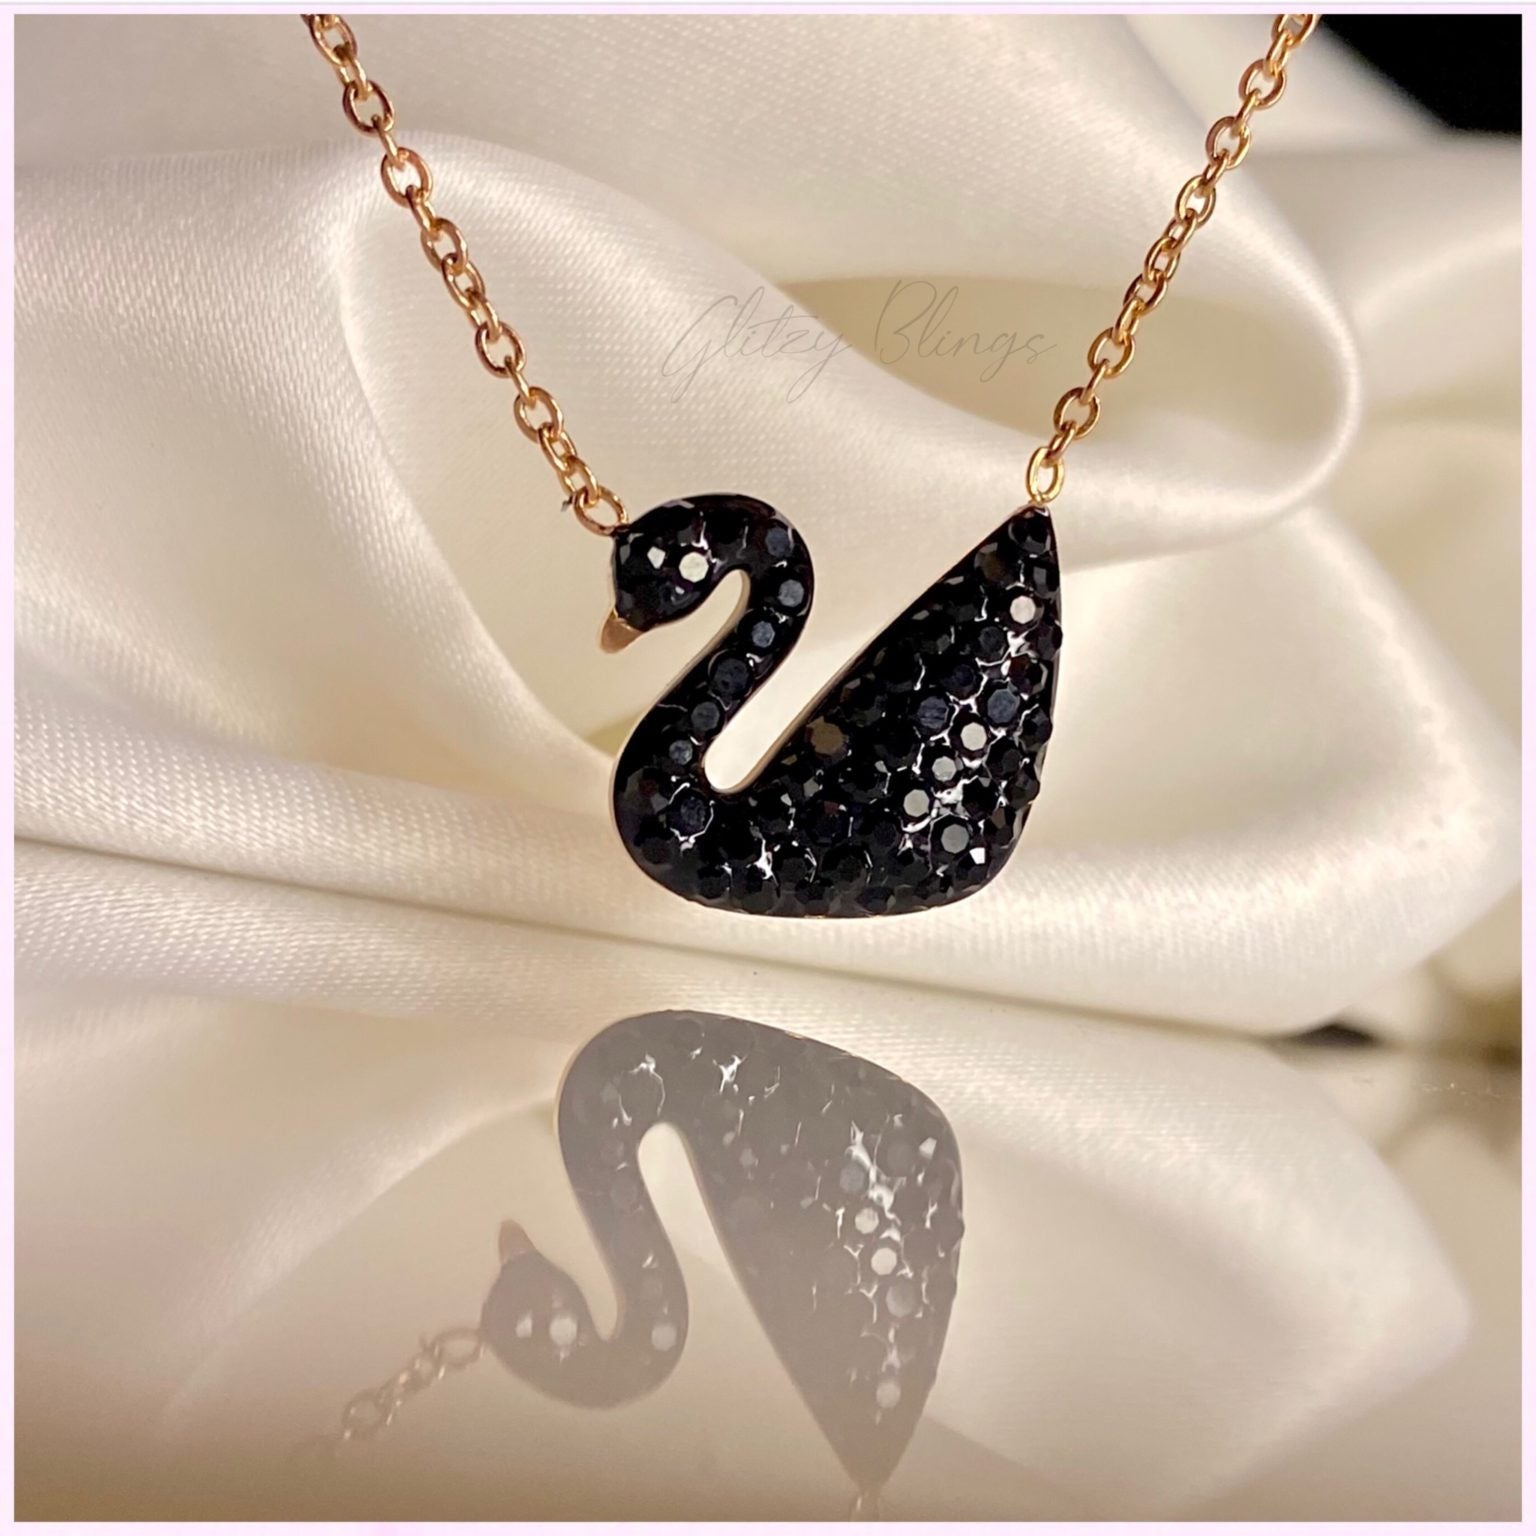 New Swarovski Iconic Swan Earrings Black and White For Swarovski Earrings